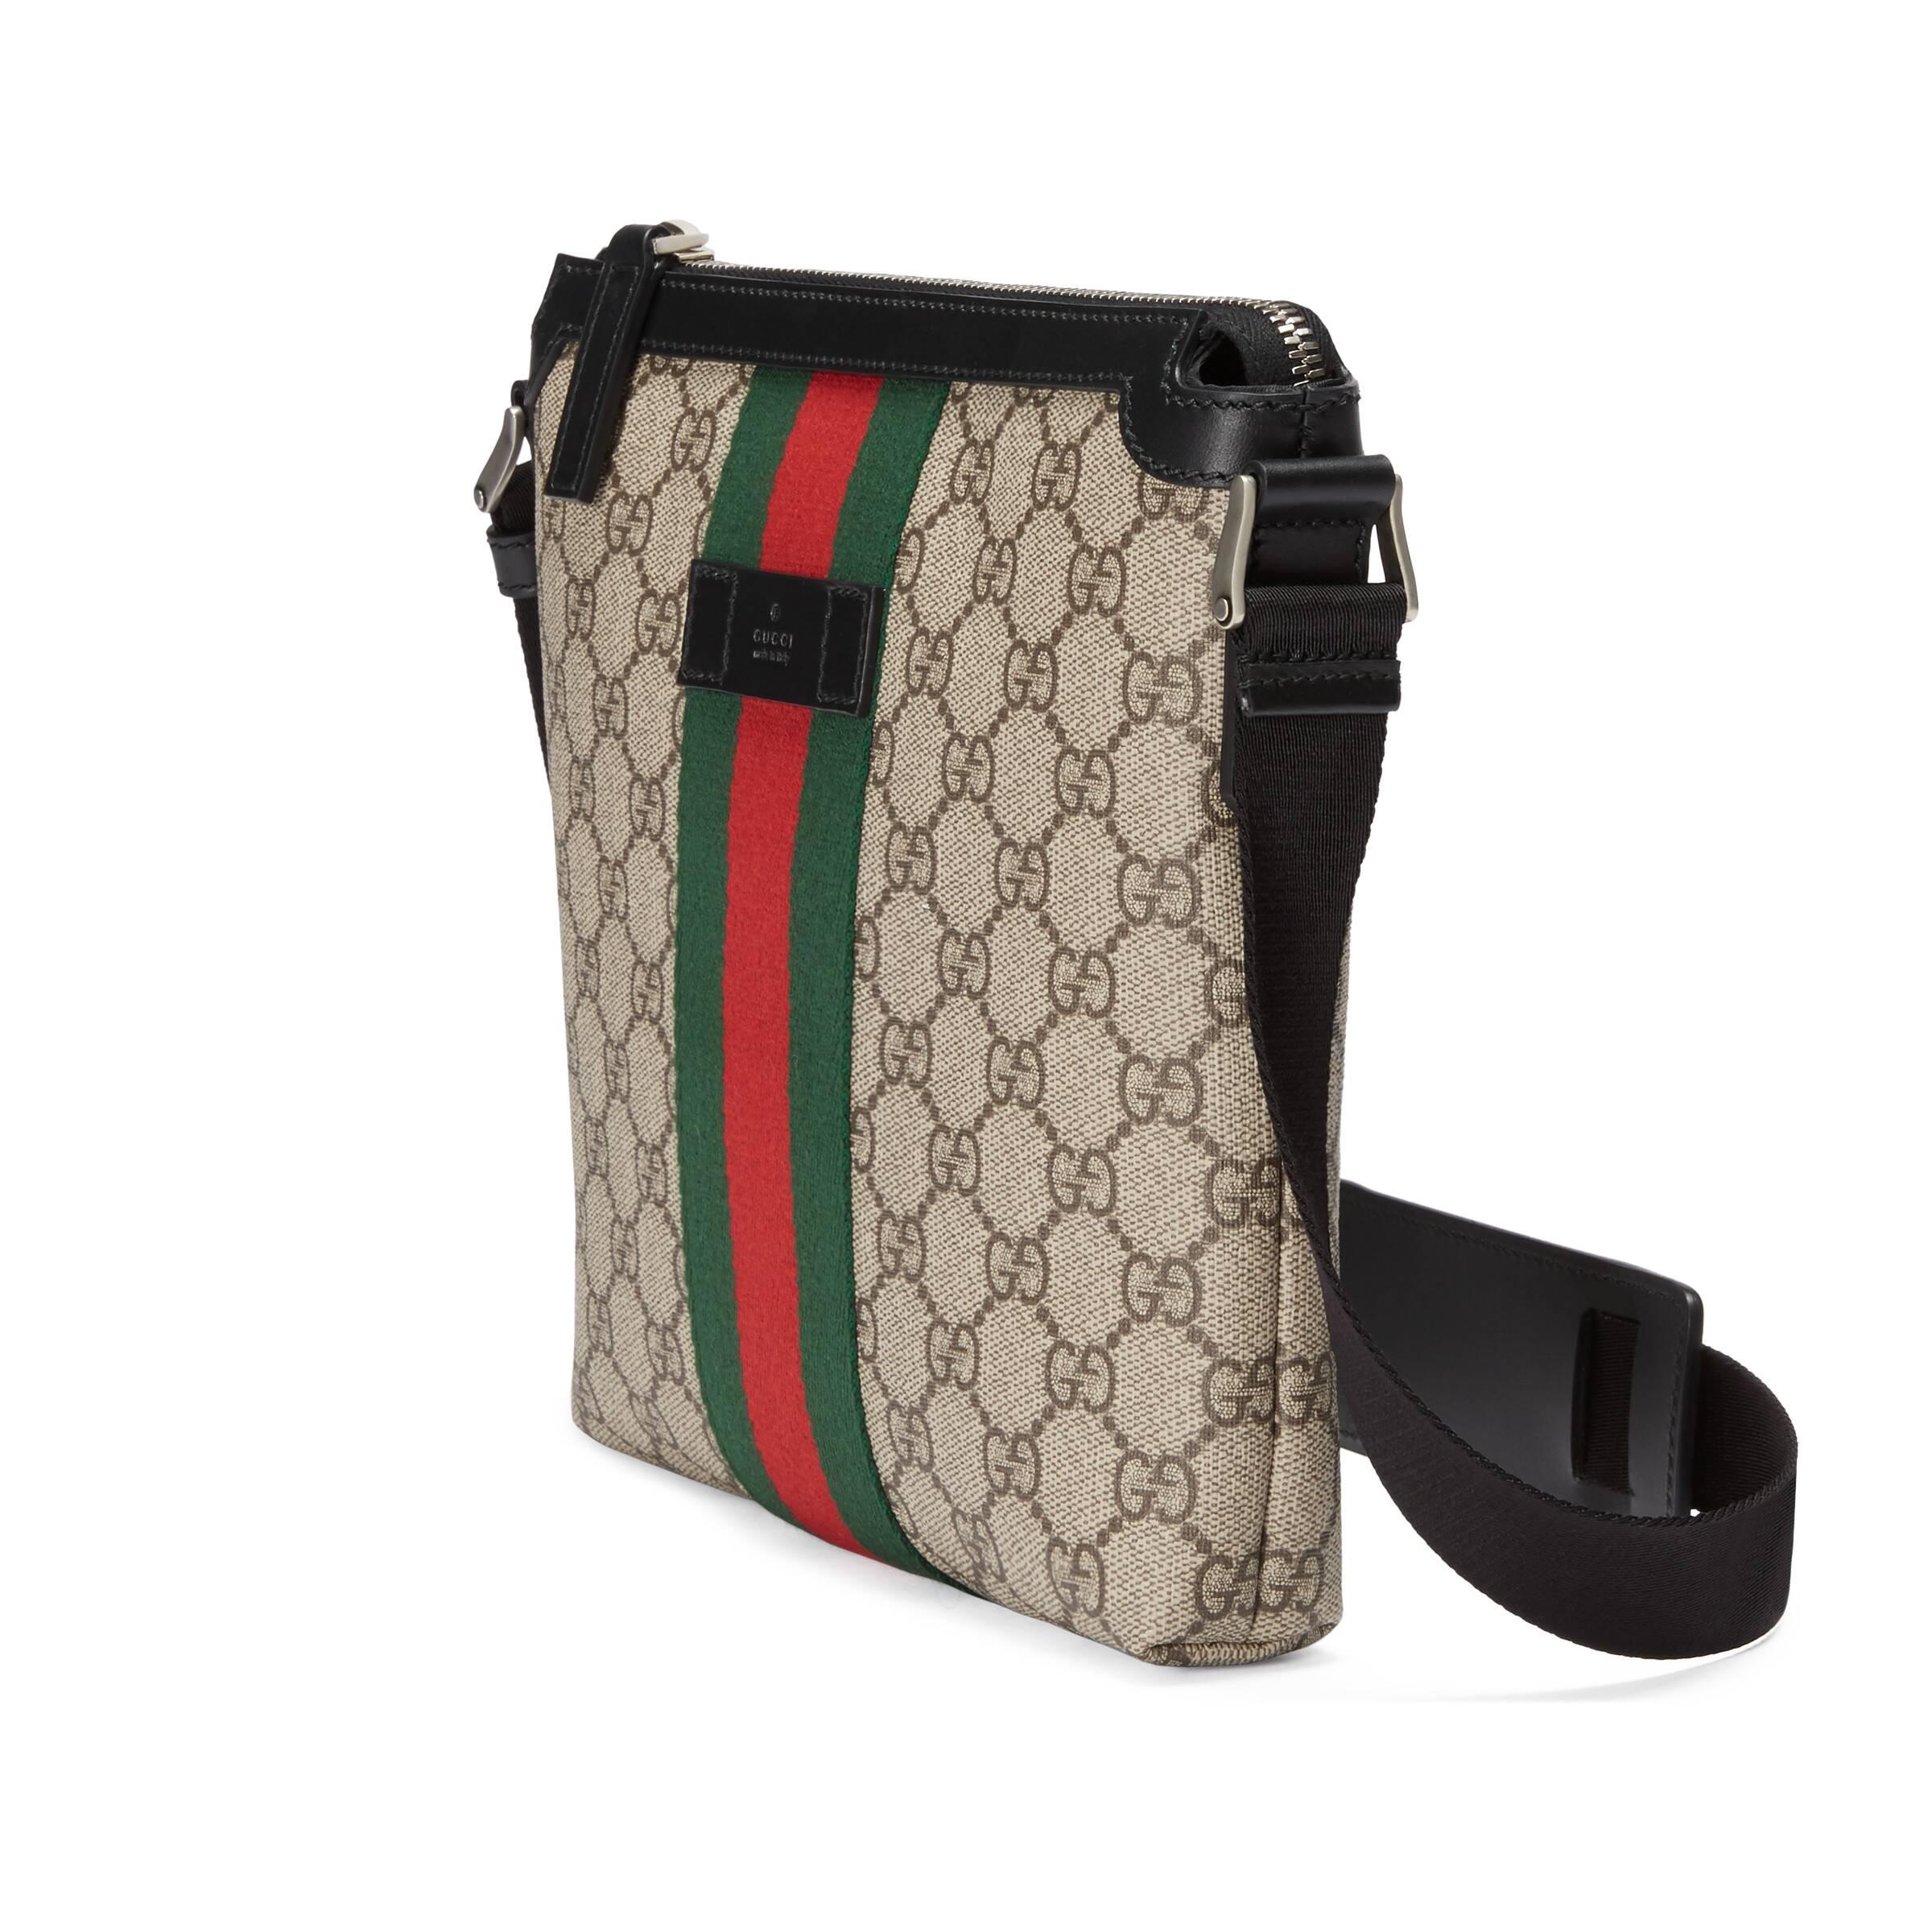 Gucci Beige GG Supreme Flat Messenger Bag in Natural for Men | Lyst